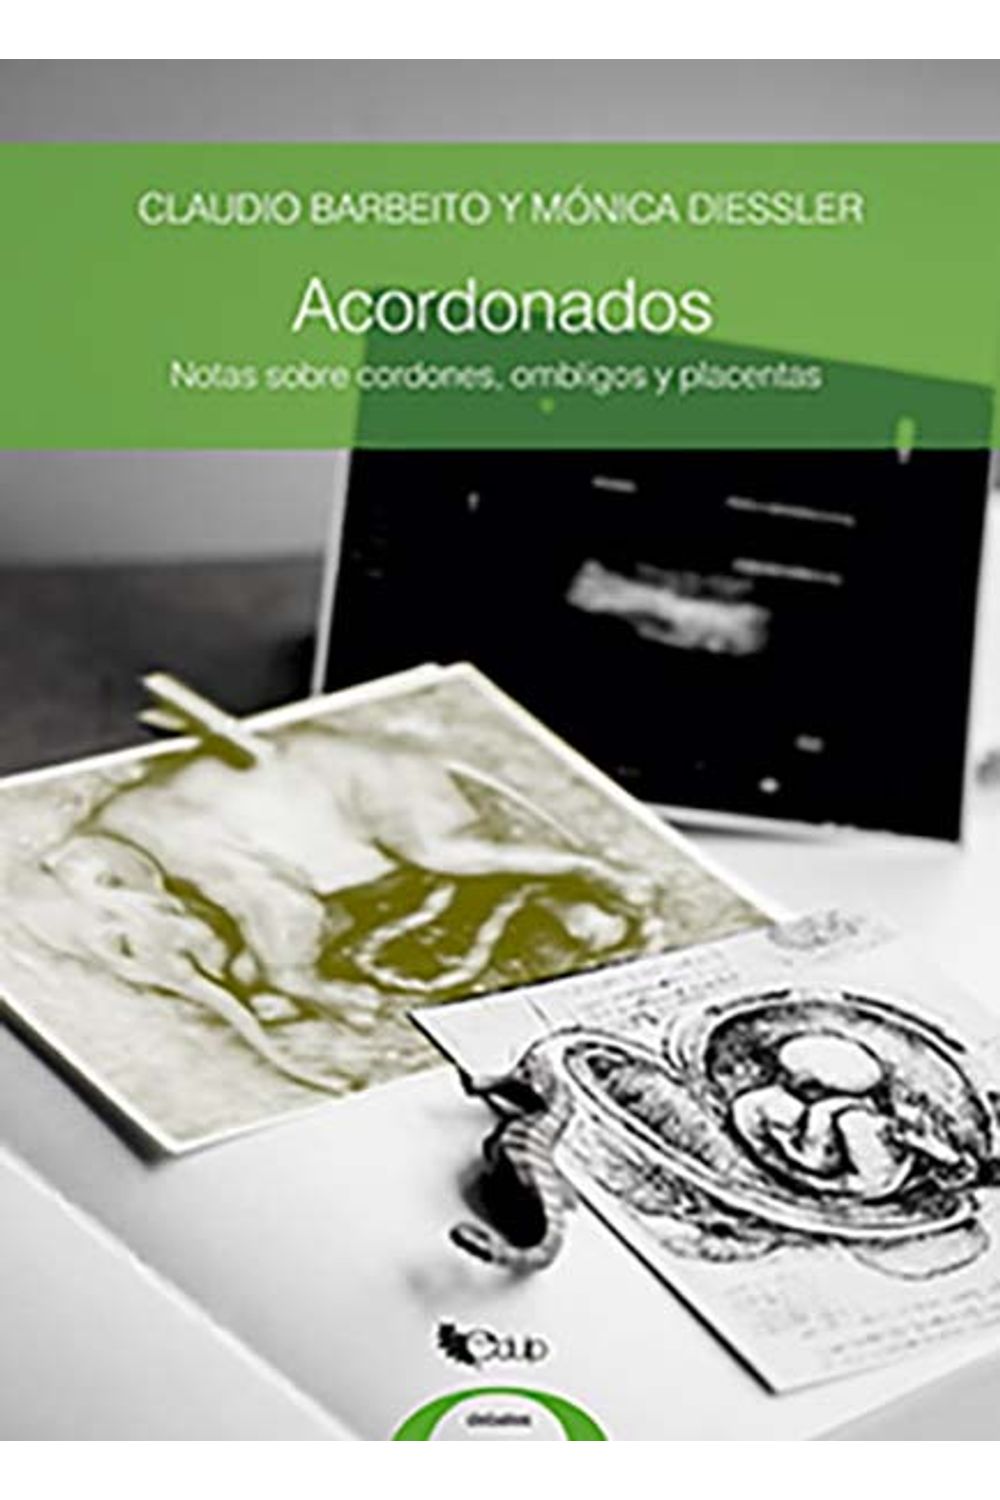 Acordonados-Notas-sobre-cordones-ombligos-y-placentas